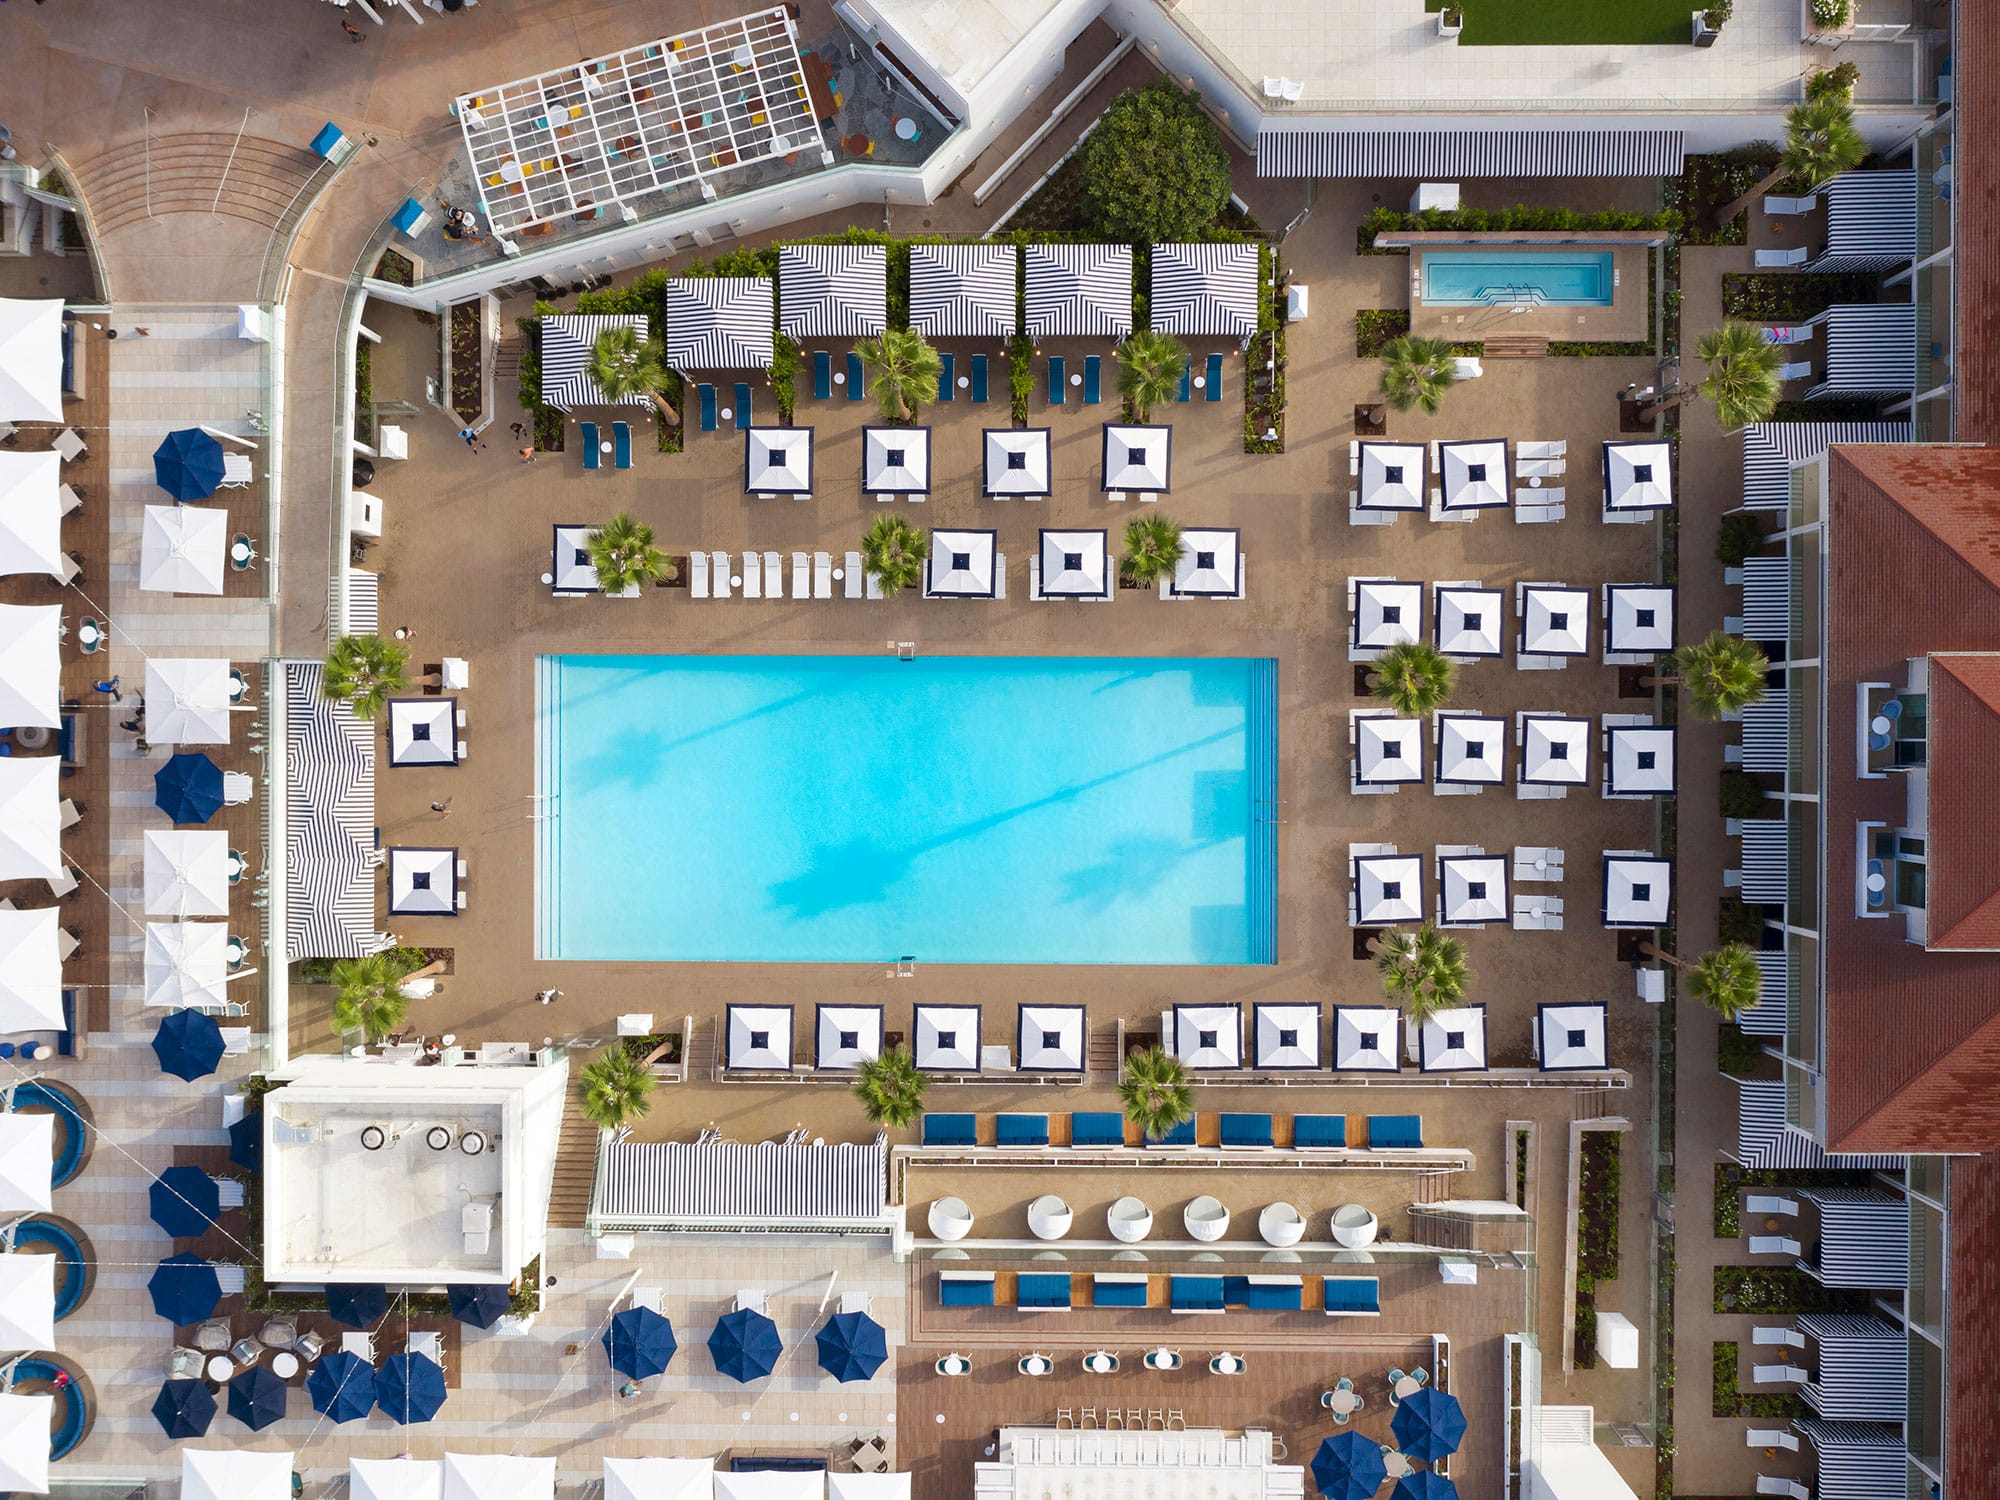 Hotel del Coronado overhead